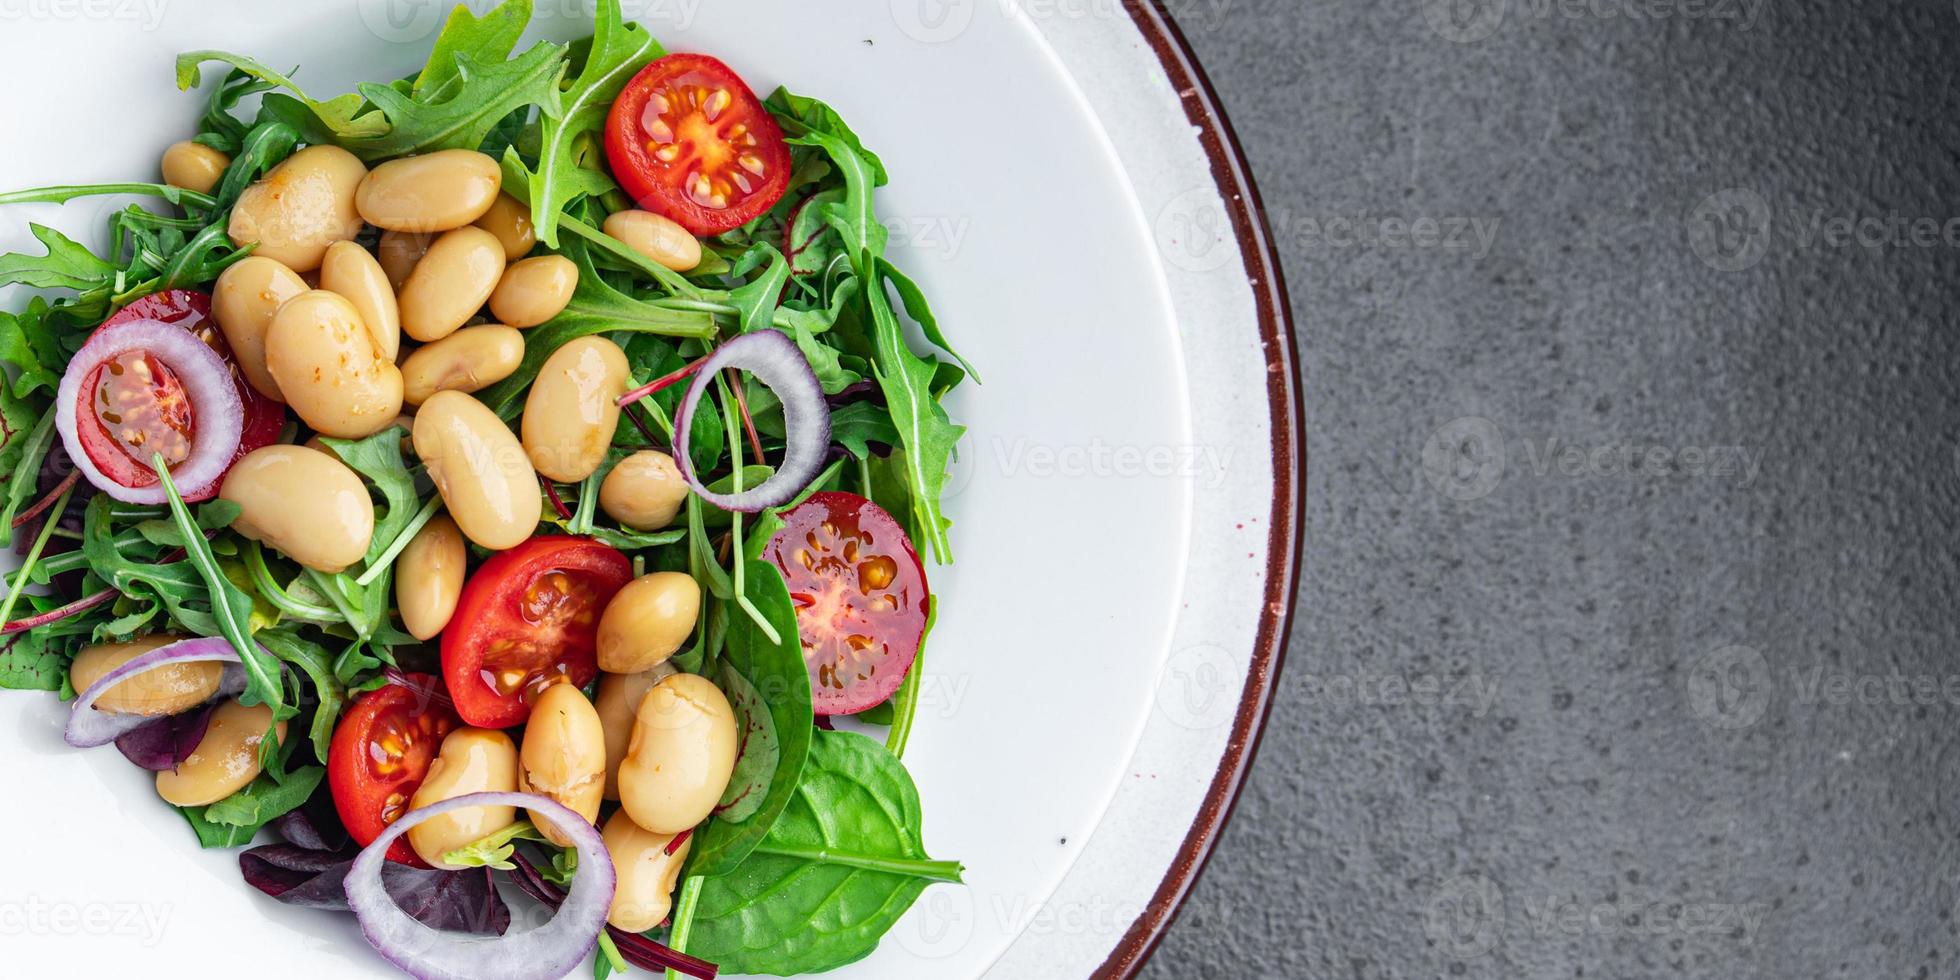 bohnensalat tomate, zwiebel, salatblätter mischen frische gesunde vegetarische mahlzeit diät snack auf dem tisch kopieren raum essen hintergrund foto